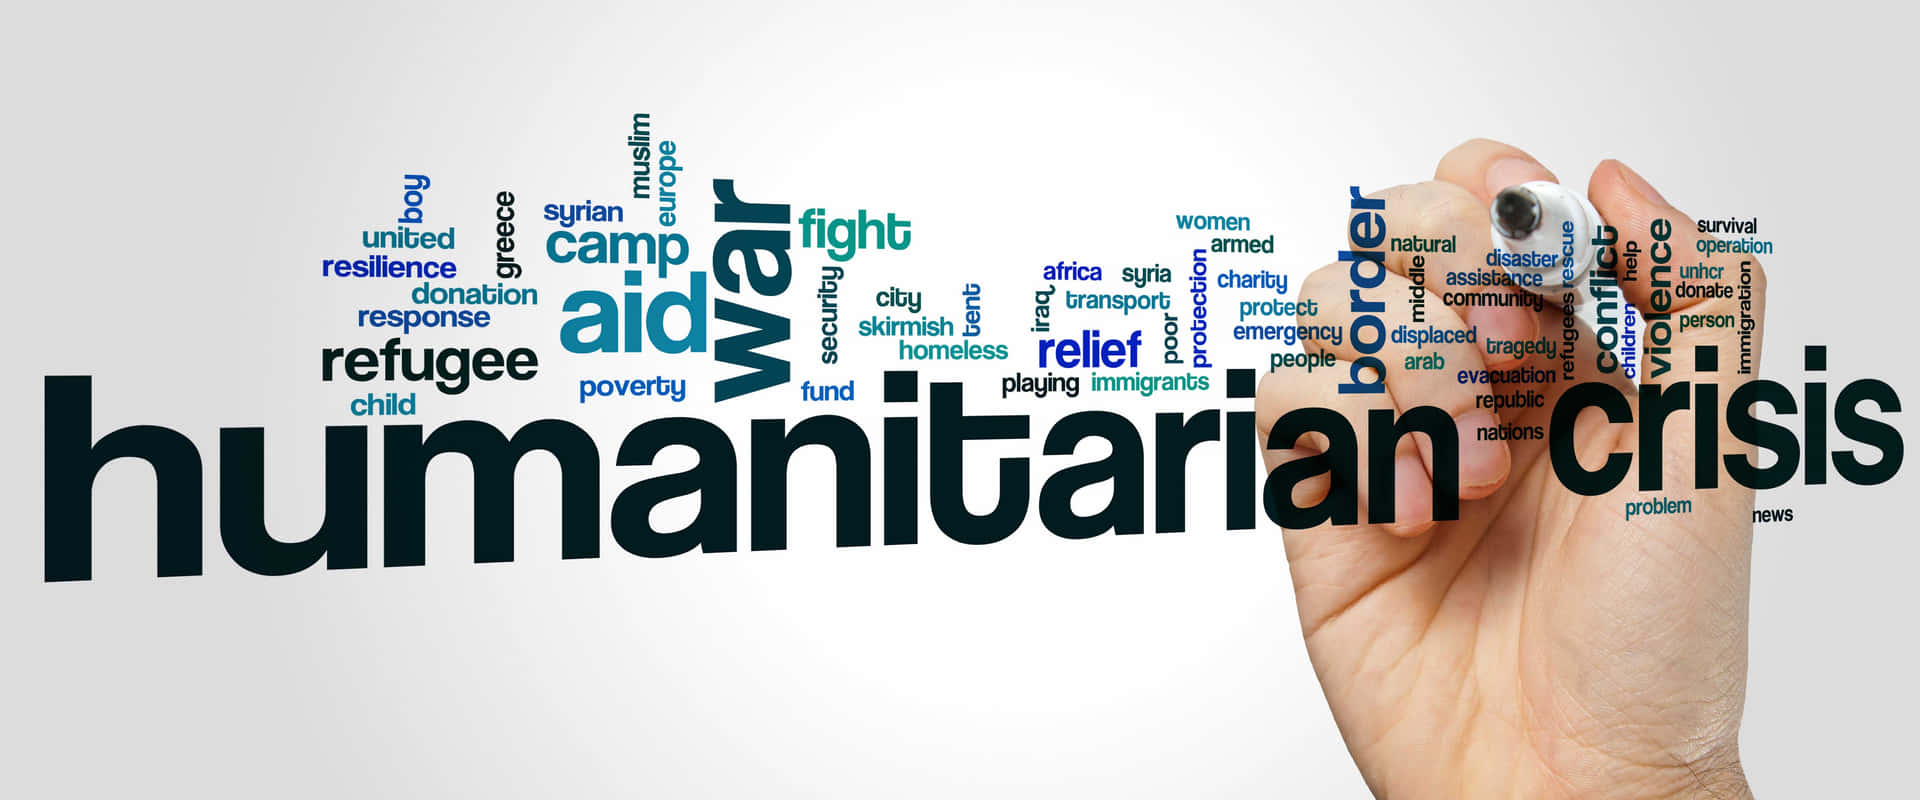 Humanitarian Crisis Word Cloud Wallpaper